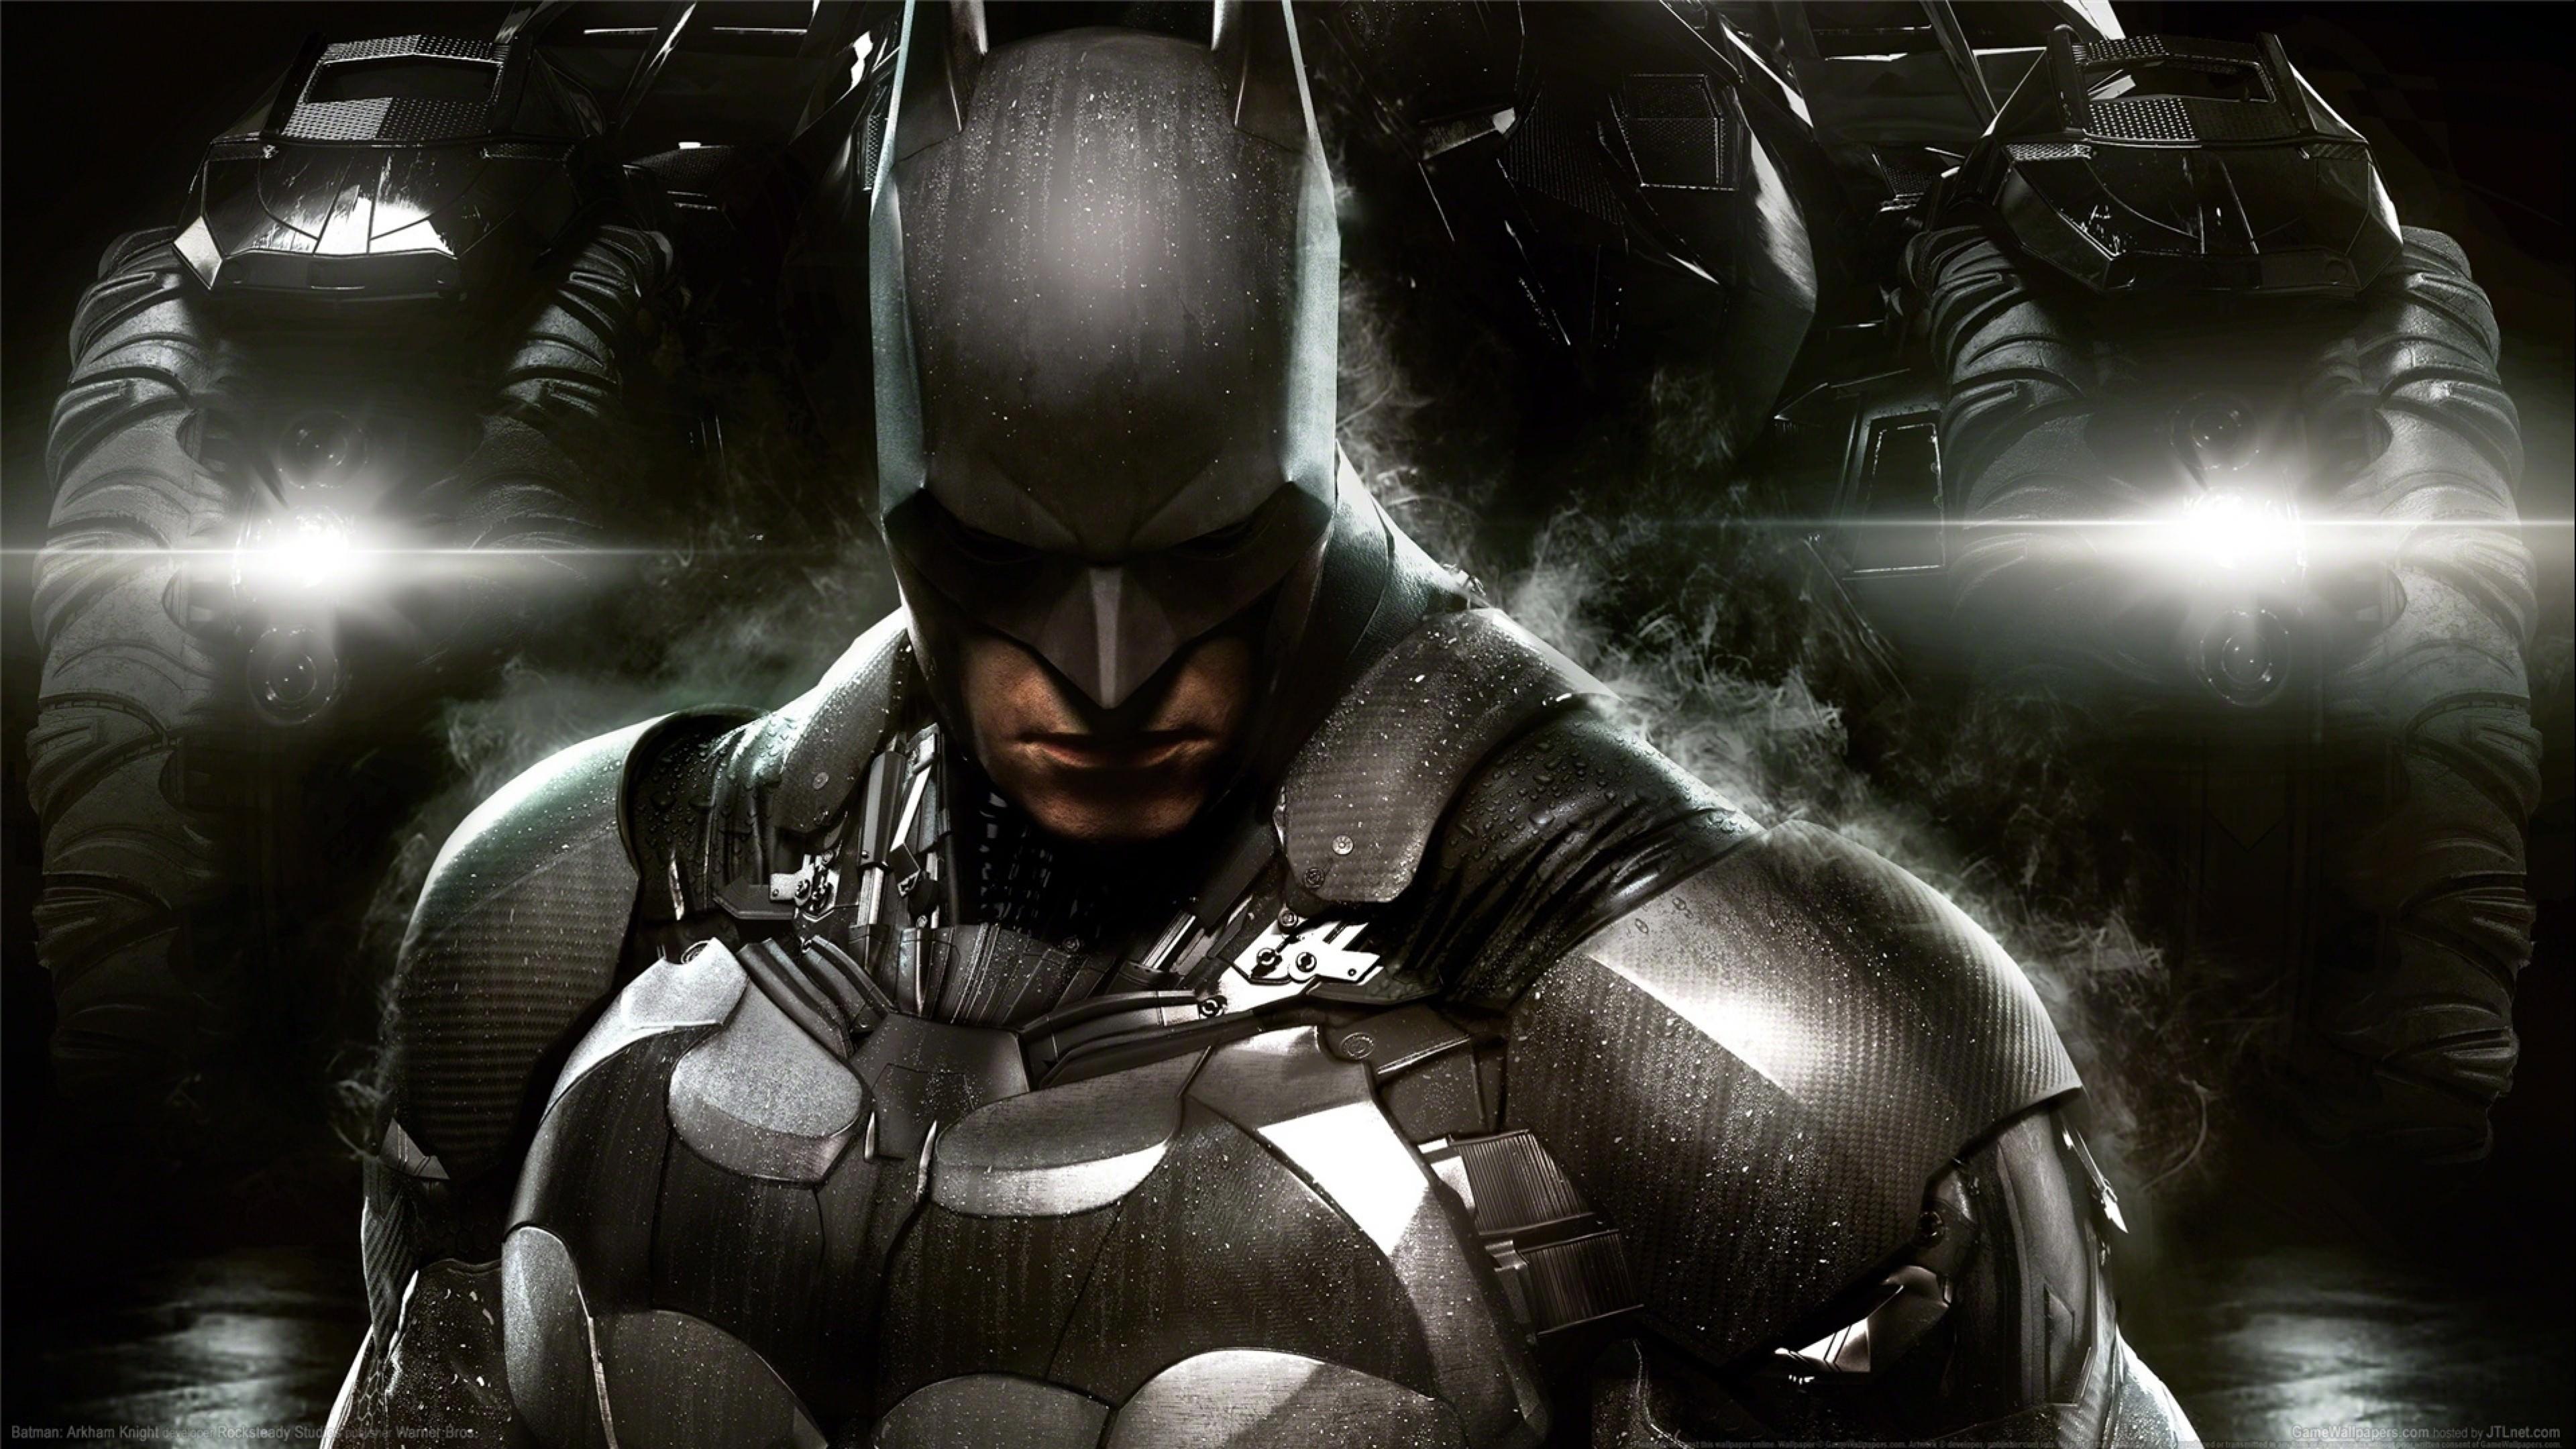 3840 x 2160 · jpeg - The Batman : Arkham Knight 4K wallpaper